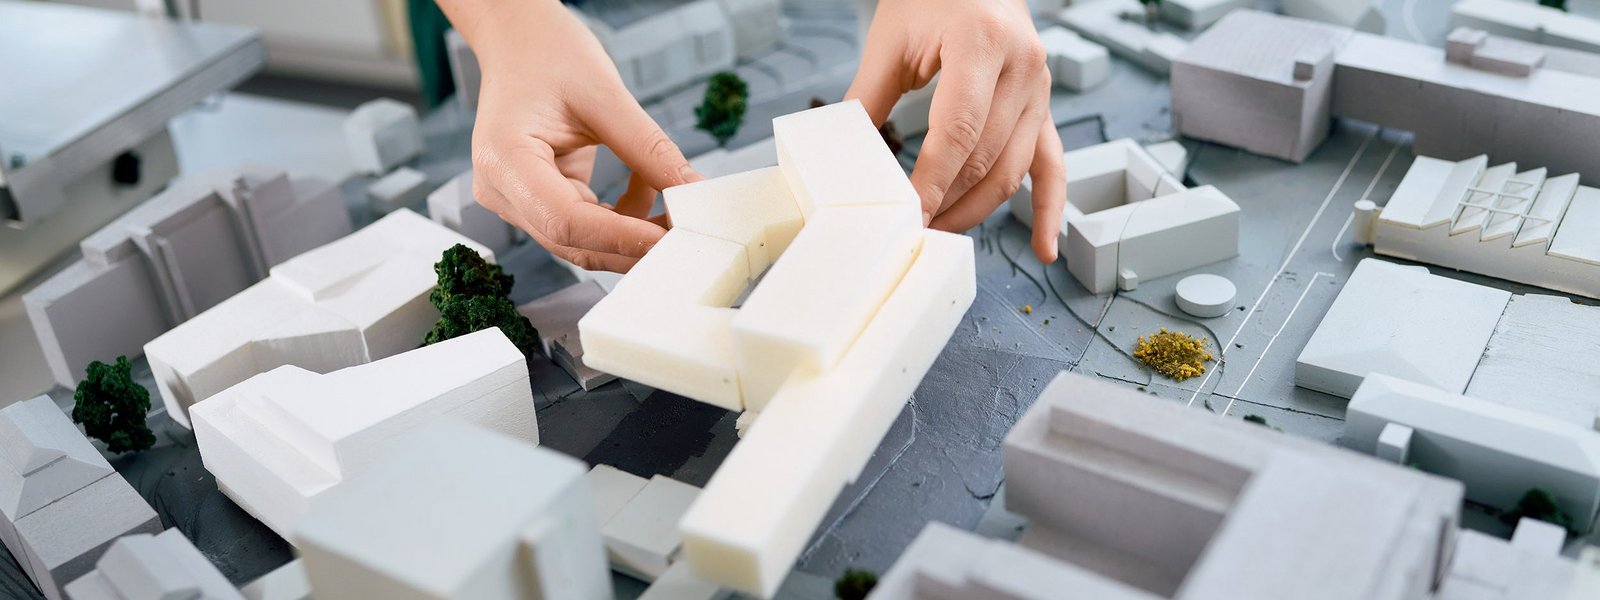 Ein Gebäudemodell wird in ein Campusmodell gesetzt.